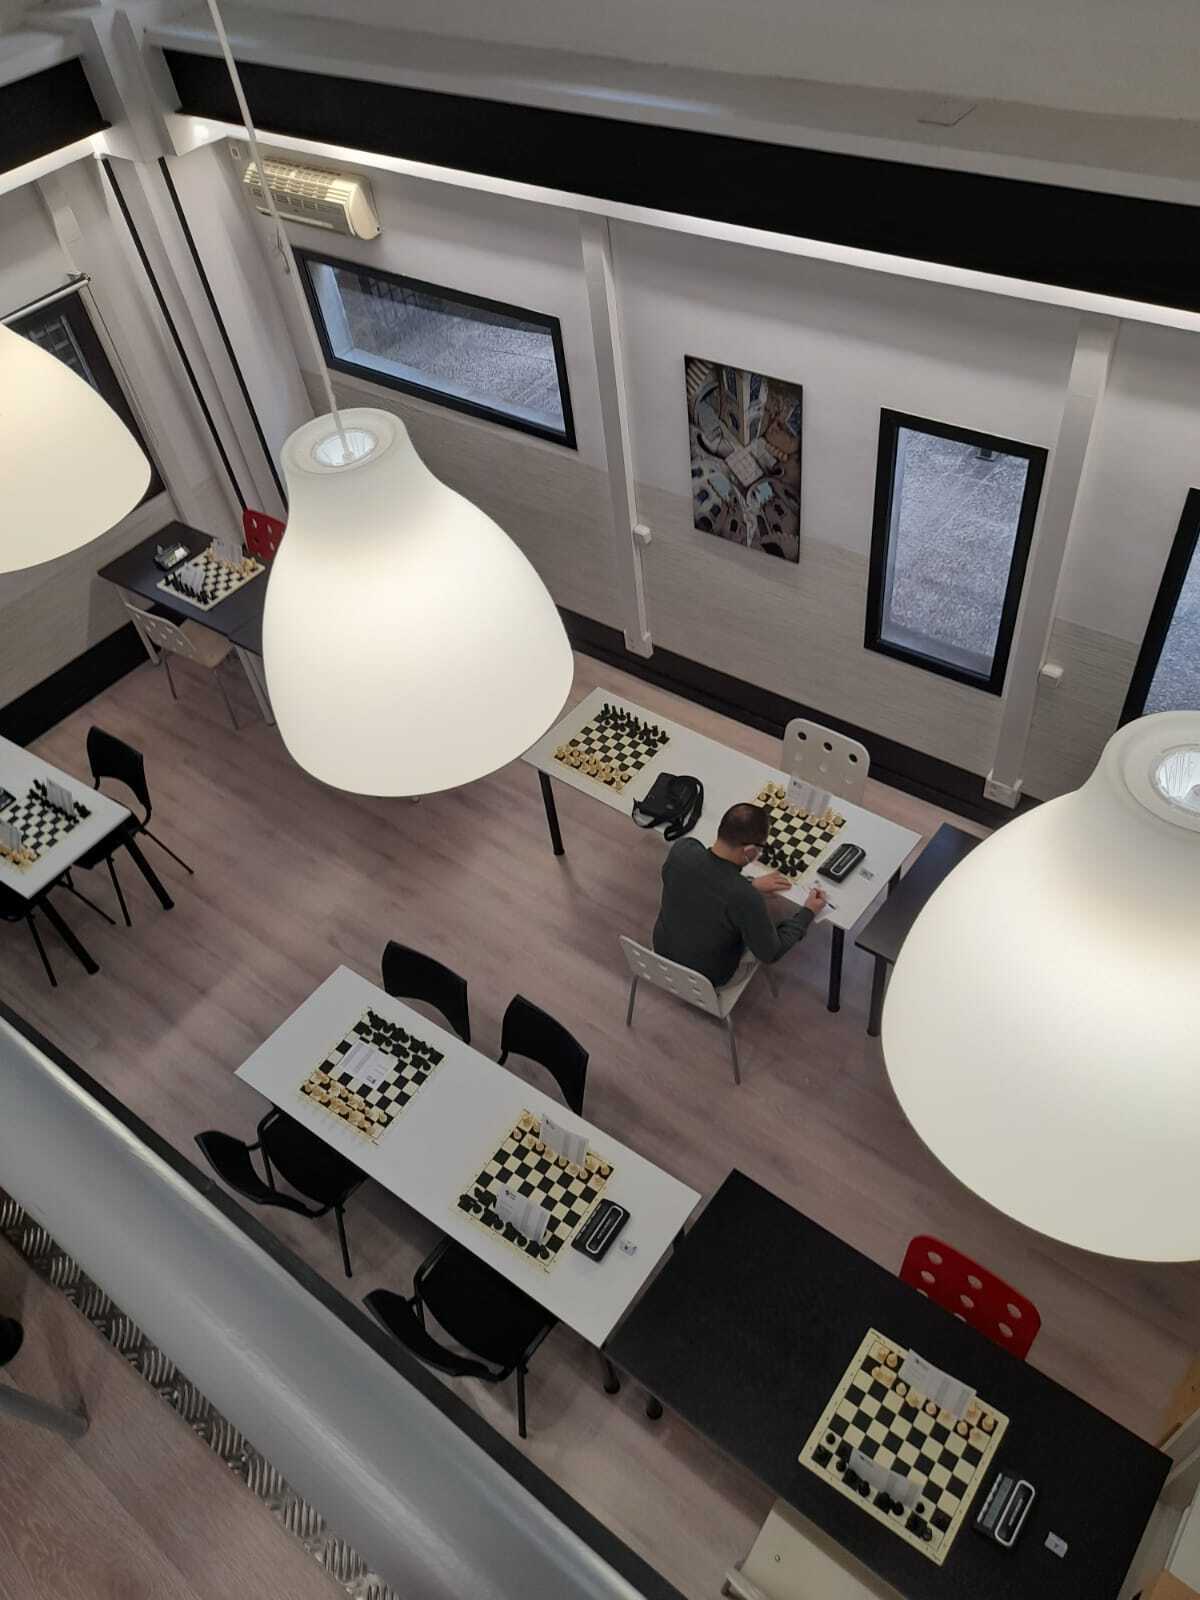 El club de ajedrez blanco y negro con más de 50 años de historia, participa en la liga madrileña de ajedrez